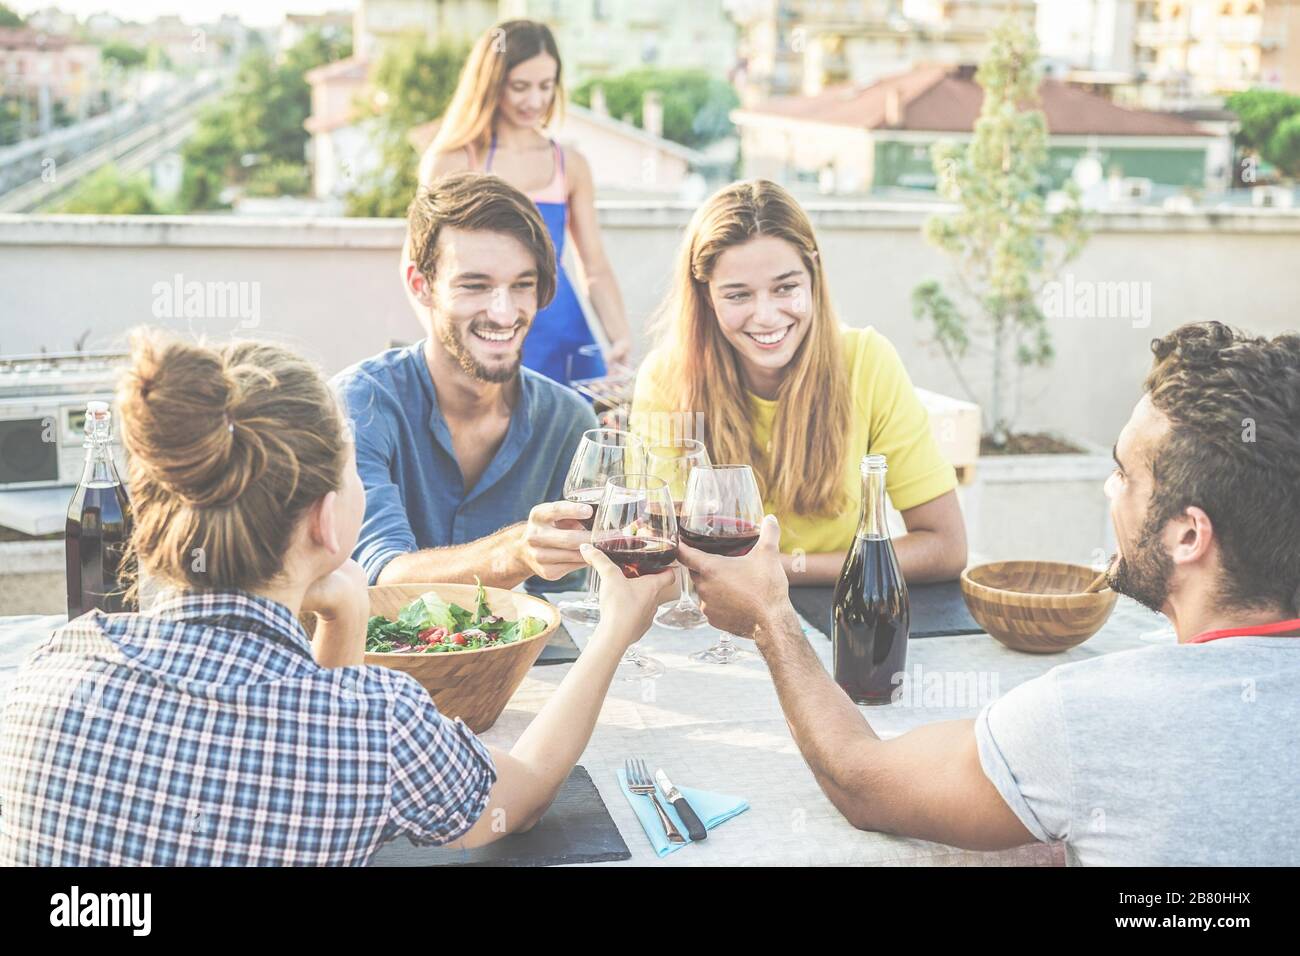 Des amis joyeux applaudissent avec du vin rouge à la fête barbecue sur le toit - des gens heureux qui font un dîner barbecue en plein air avec vue sur la ville en arrière-plan - Focus on bott Banque D'Images